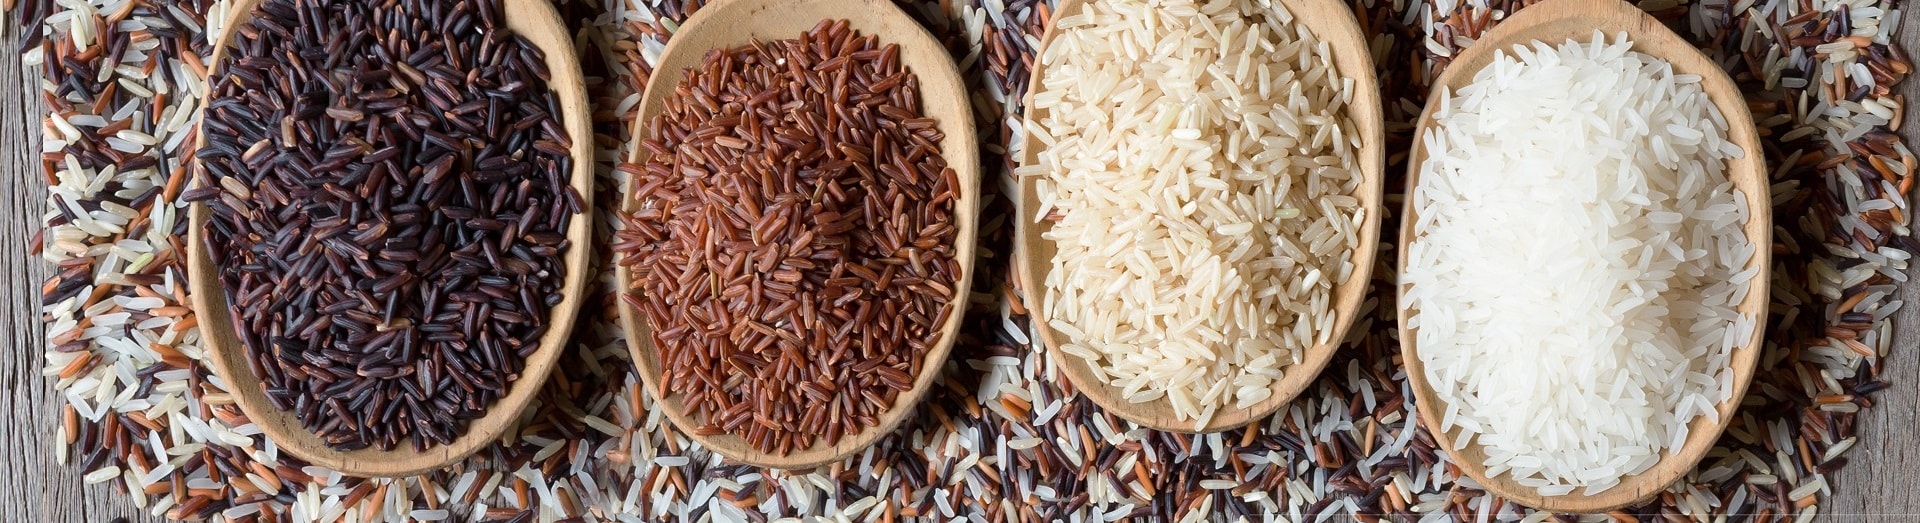 Röntgeninspektion von Reis in der Lebensmittelindustrie